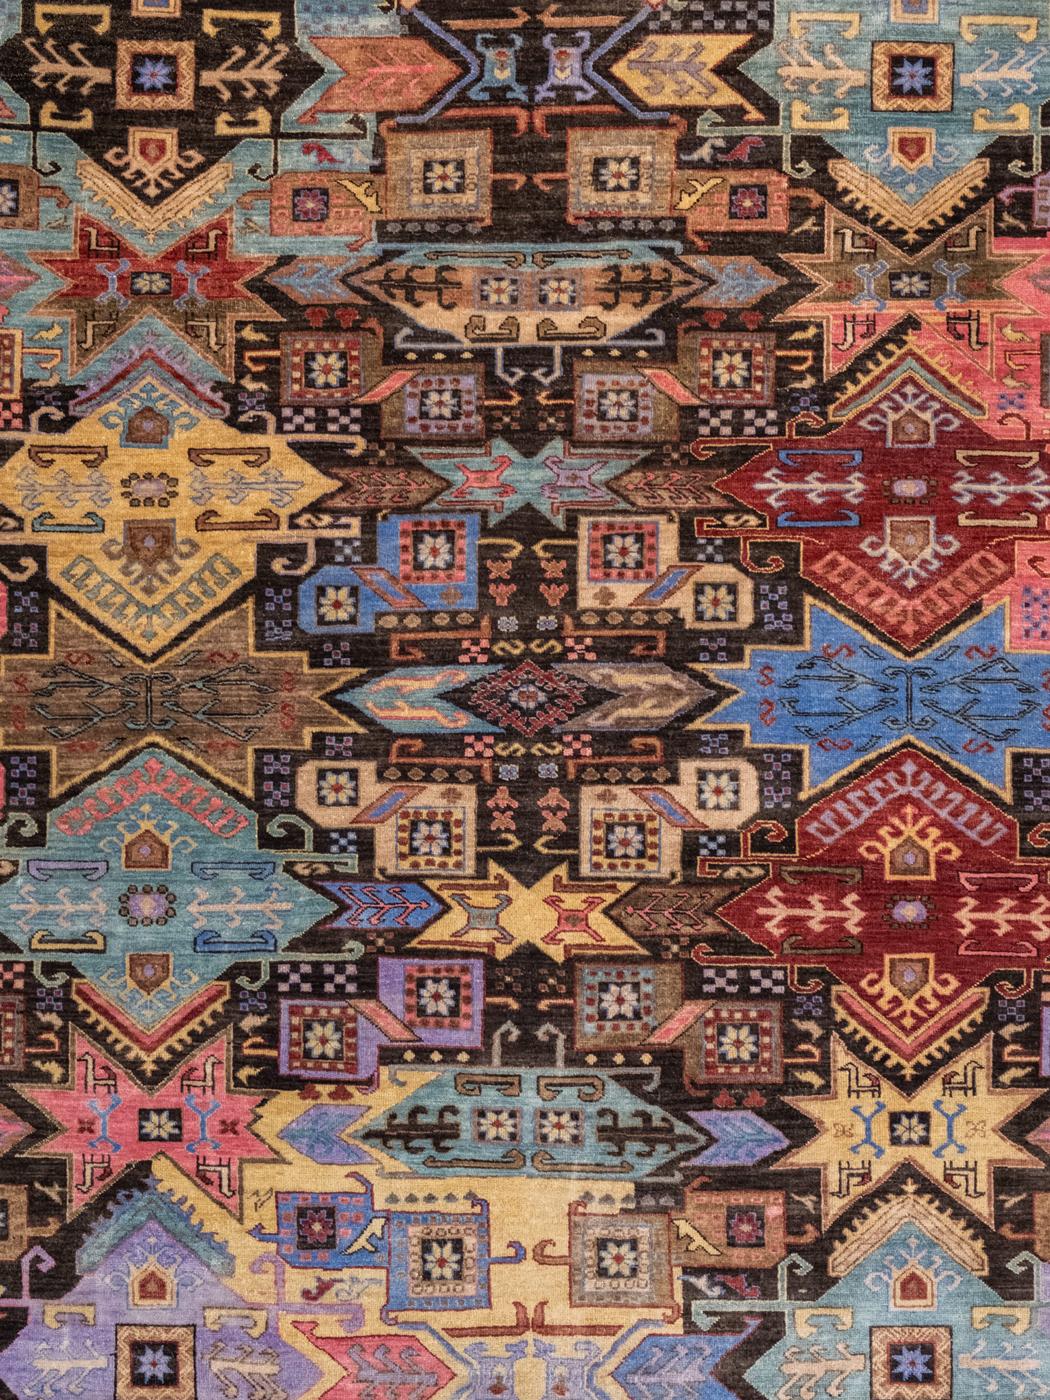 Ce tapis kazakh moderne, noué à la main en pure laine, présente un motif lumineux, coloré et géométrique de 7'11'' x 9'7''. Illustrant un design traditionnel persan kazak, des fleurs géométriques et des motifs de papillons sont détaillés dans des